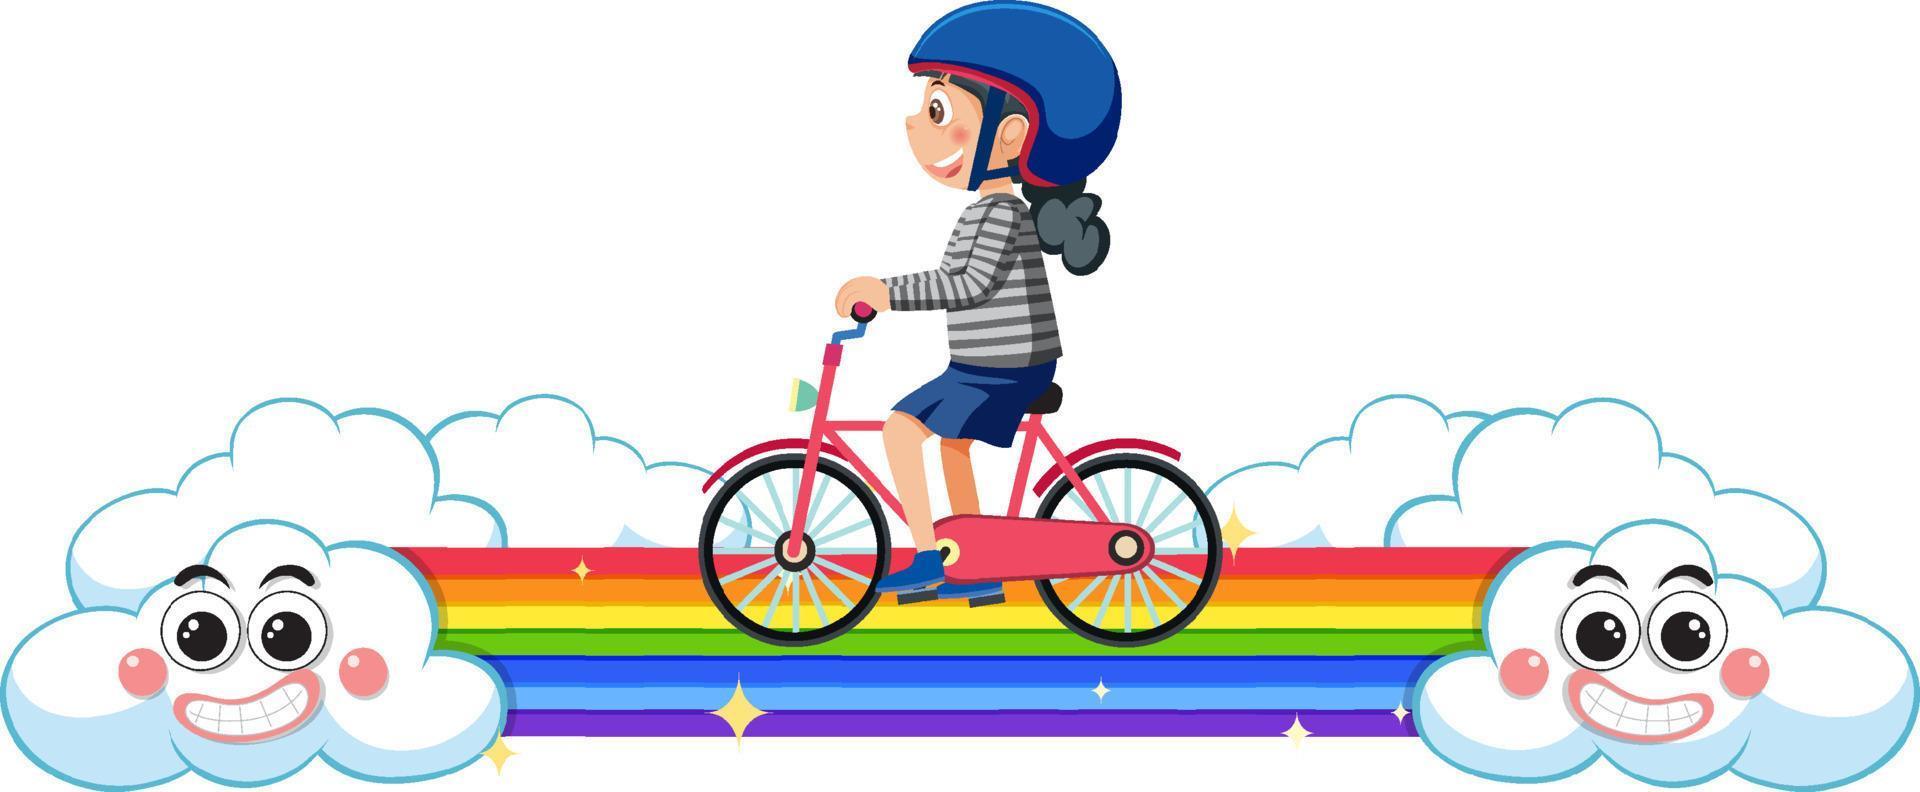 bambini equitazione bicicletta su arcobaleno vettore